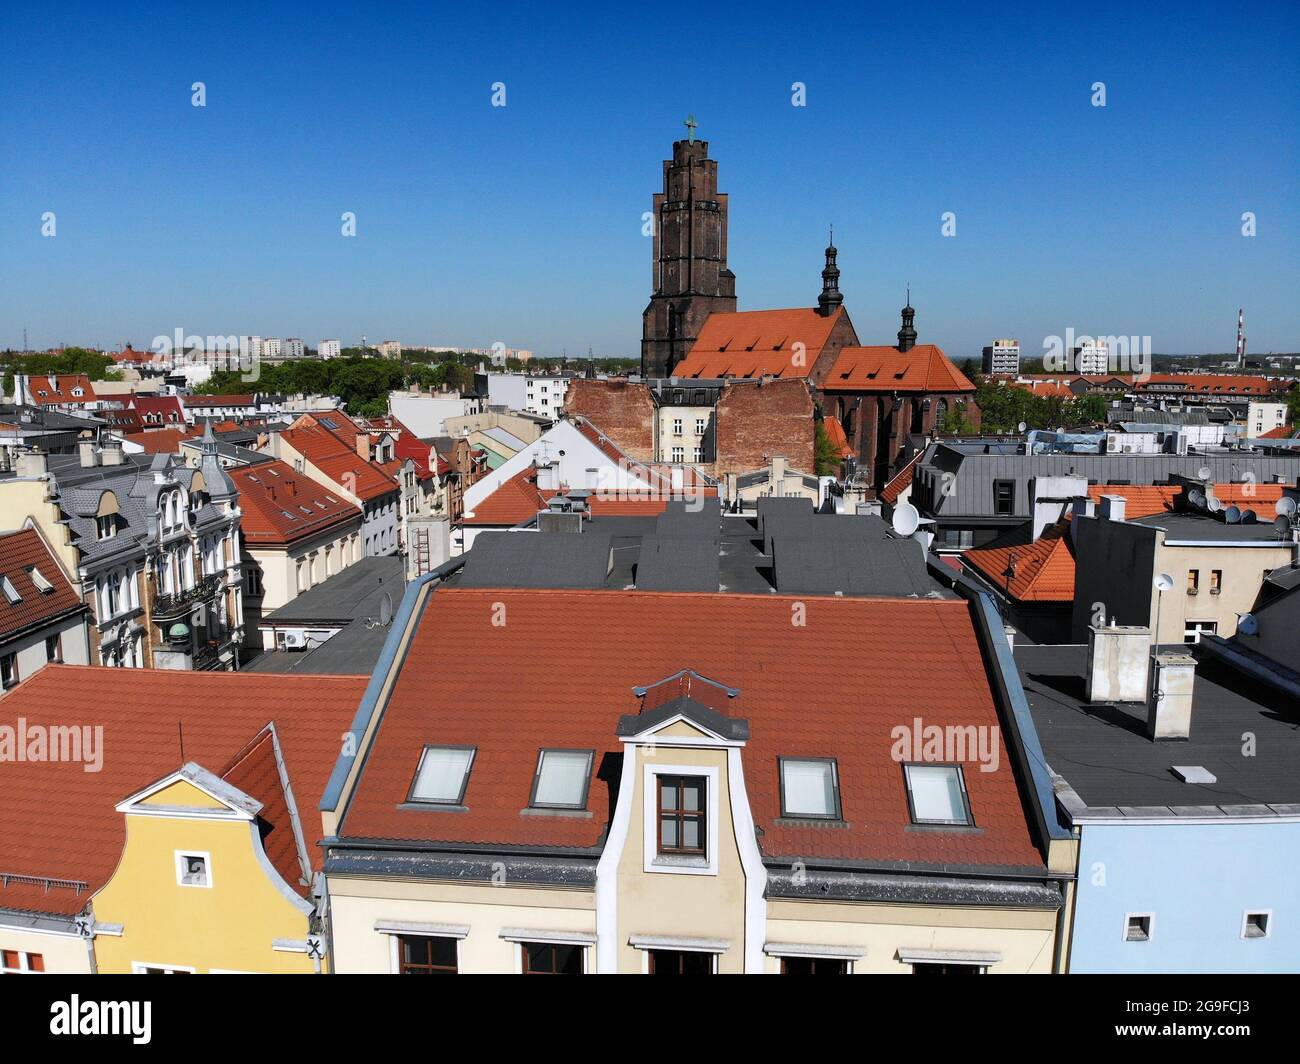 Gliwice Stadt in Polen. Skyline der Altstadt von Gliwice. Stockfoto